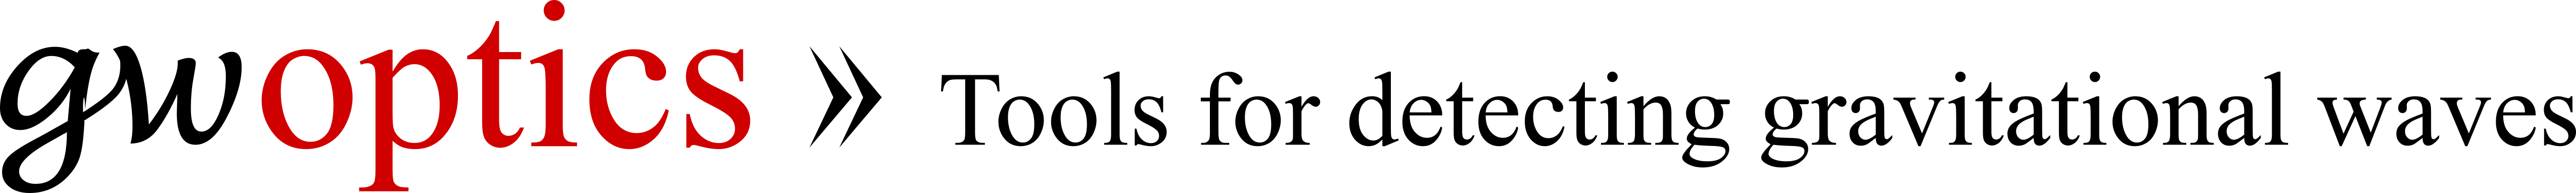 gwoptics logo